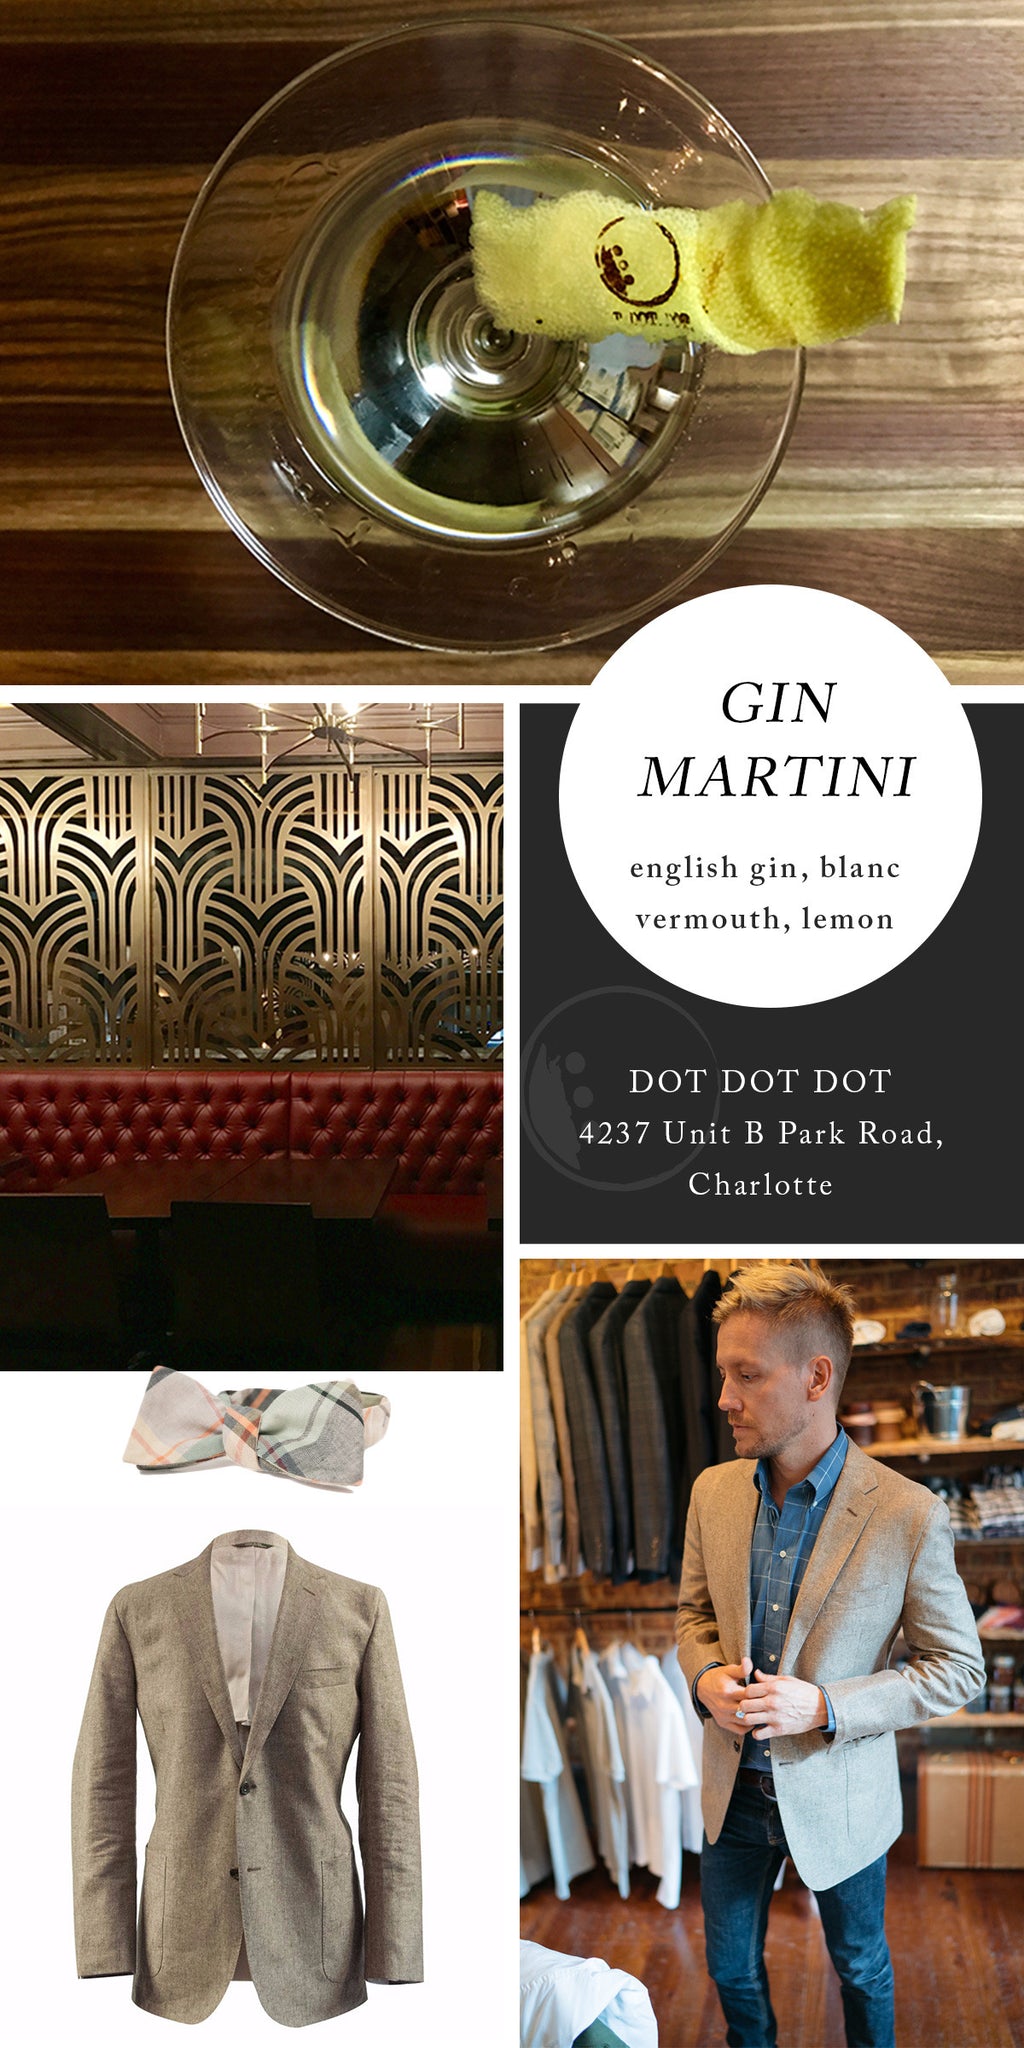 Gin Martini from Dot Dot Dot